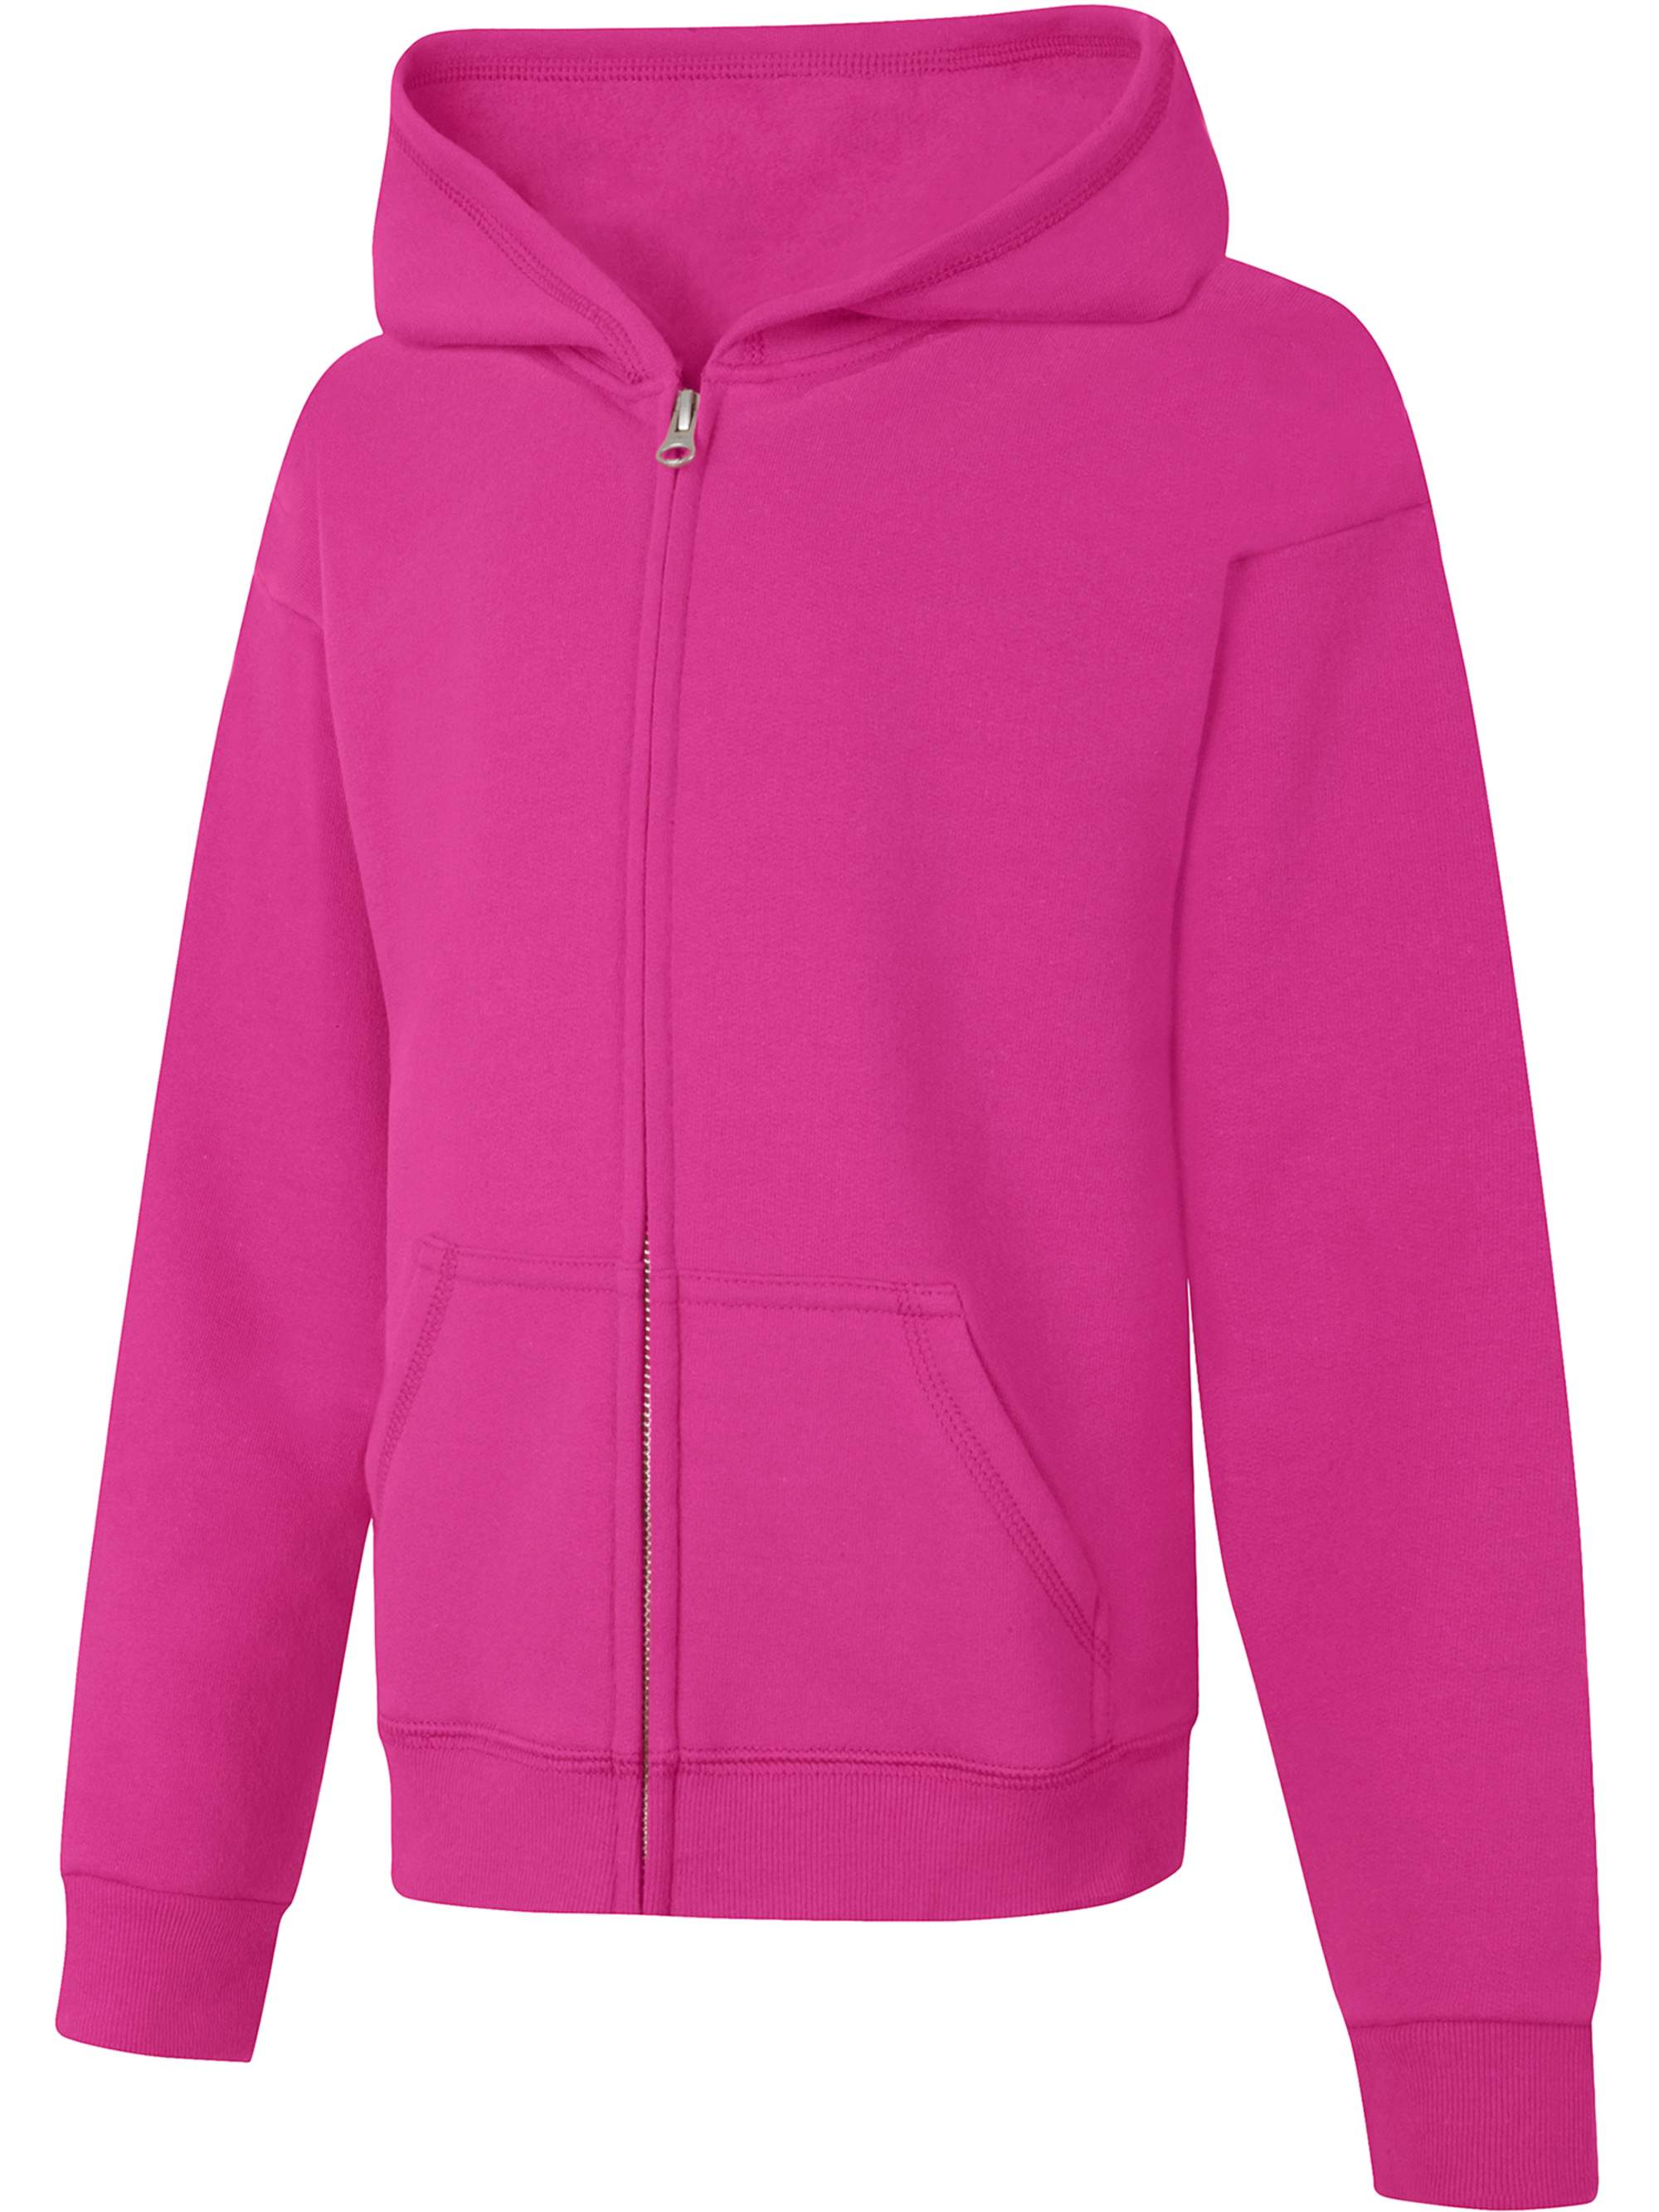 Hanes Girls ComfortSoft Eco Smart Full-Zip Hoodie Sweatshirt, Sizes 4-16 - image 1 of 4